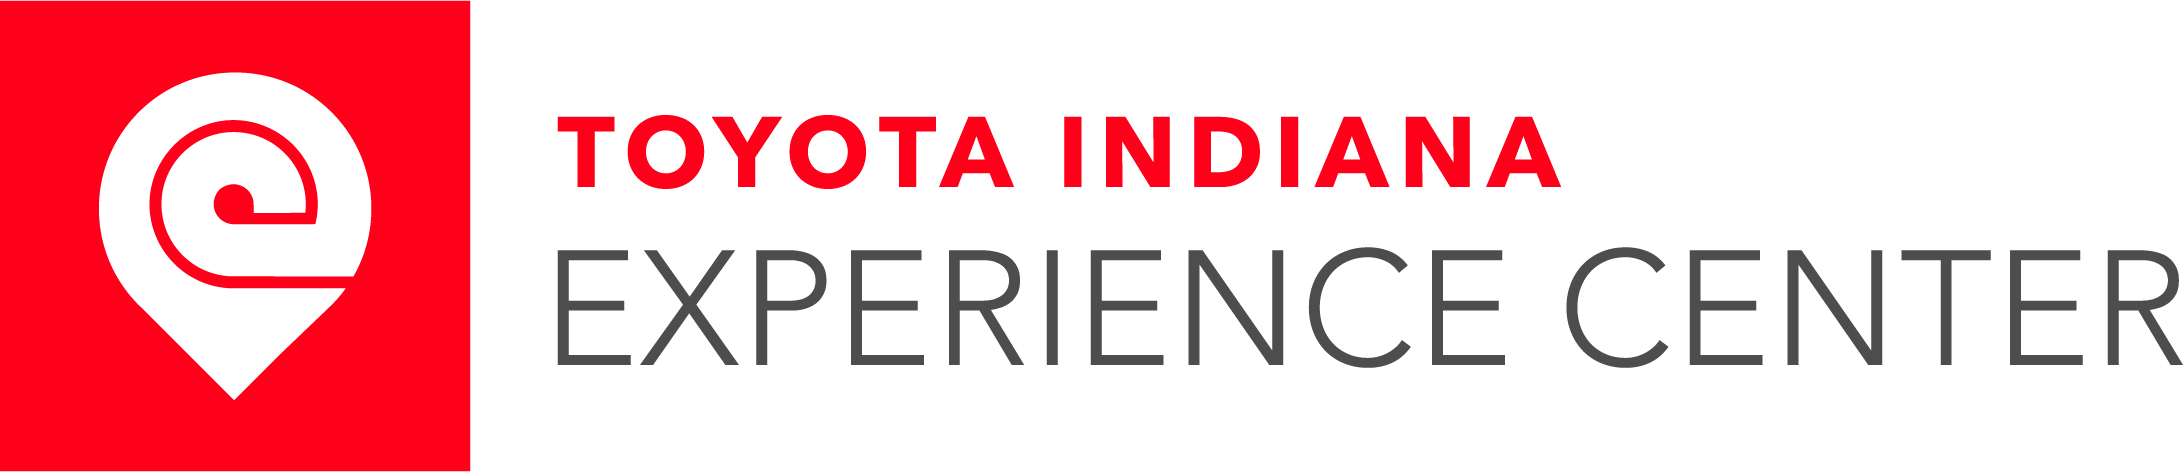 Toyota Indiana Experience Center logo